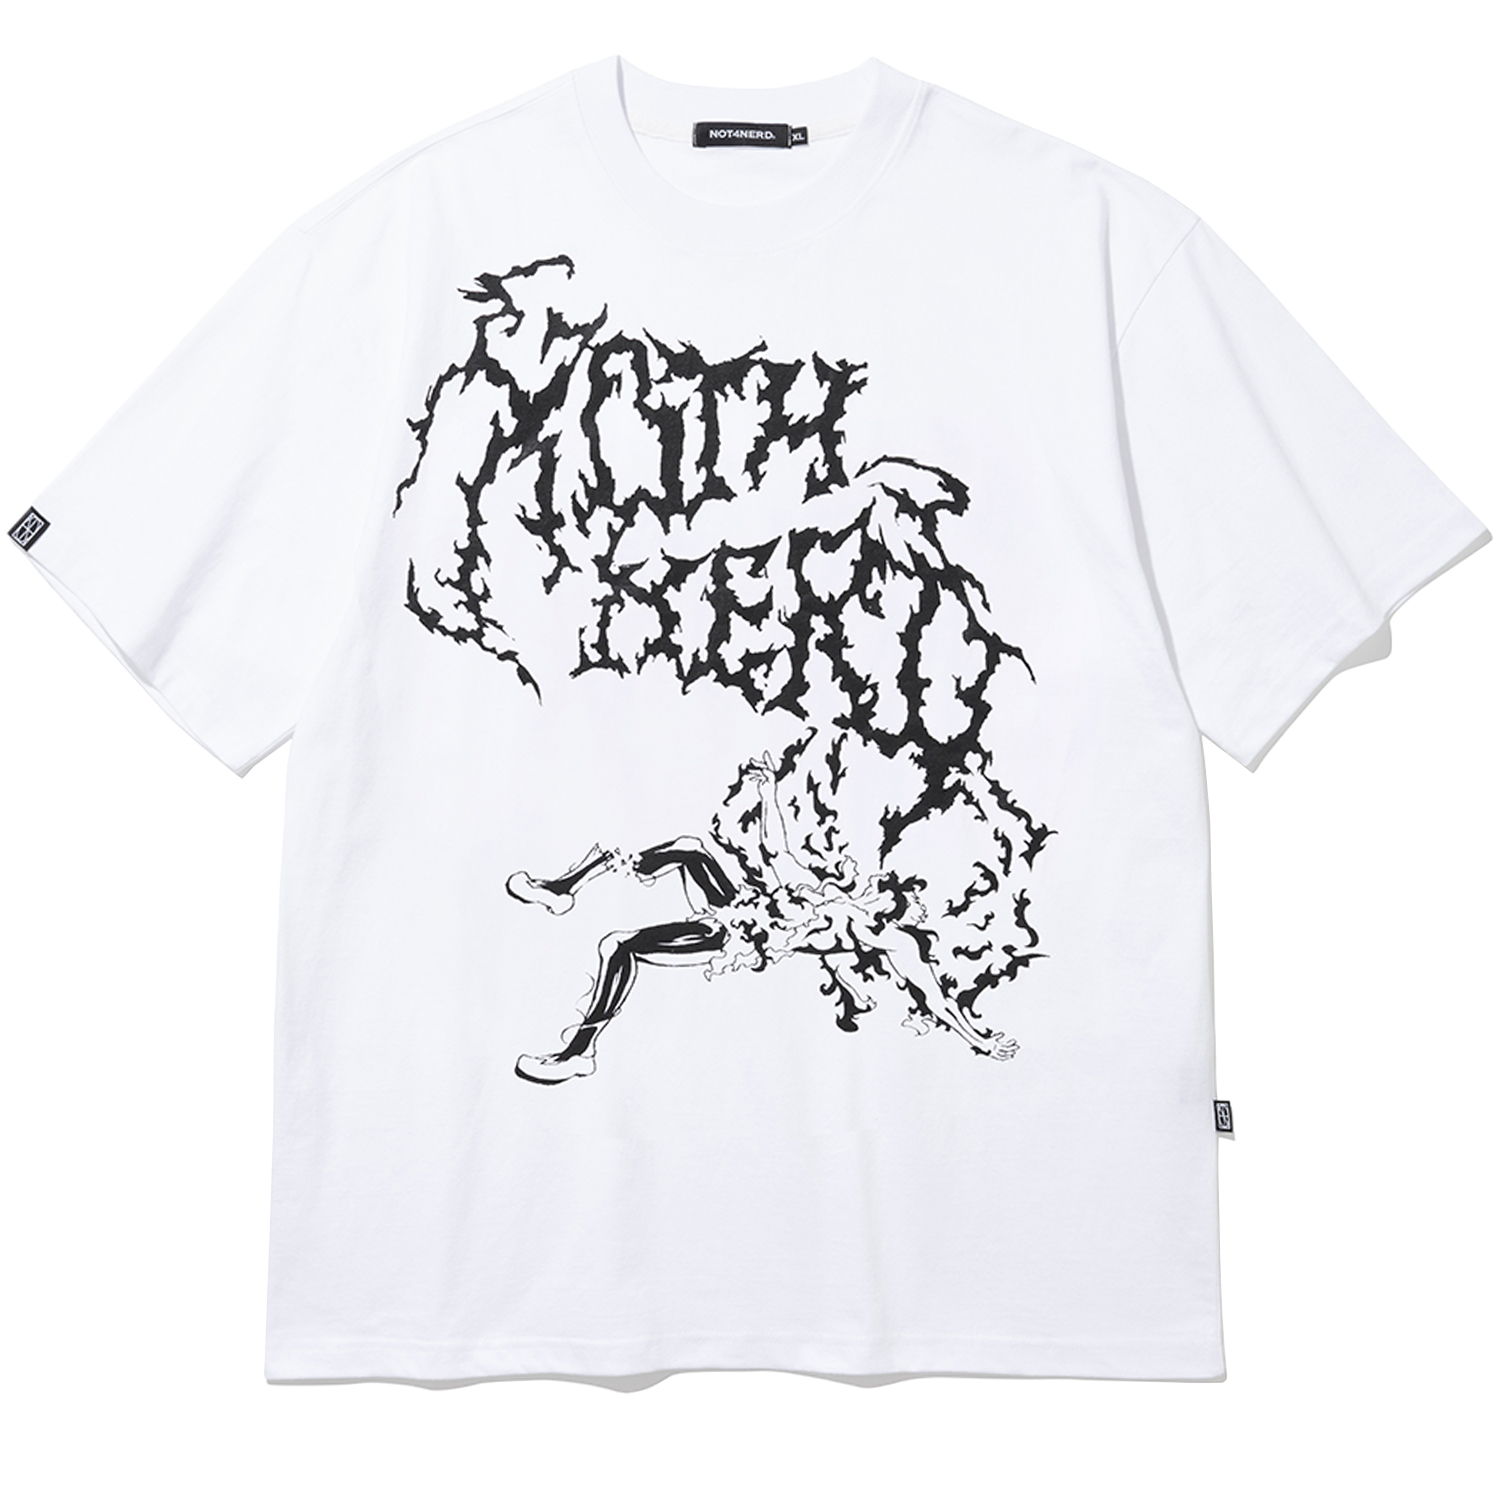 Scream T-Shirts - White,NOT4NERD